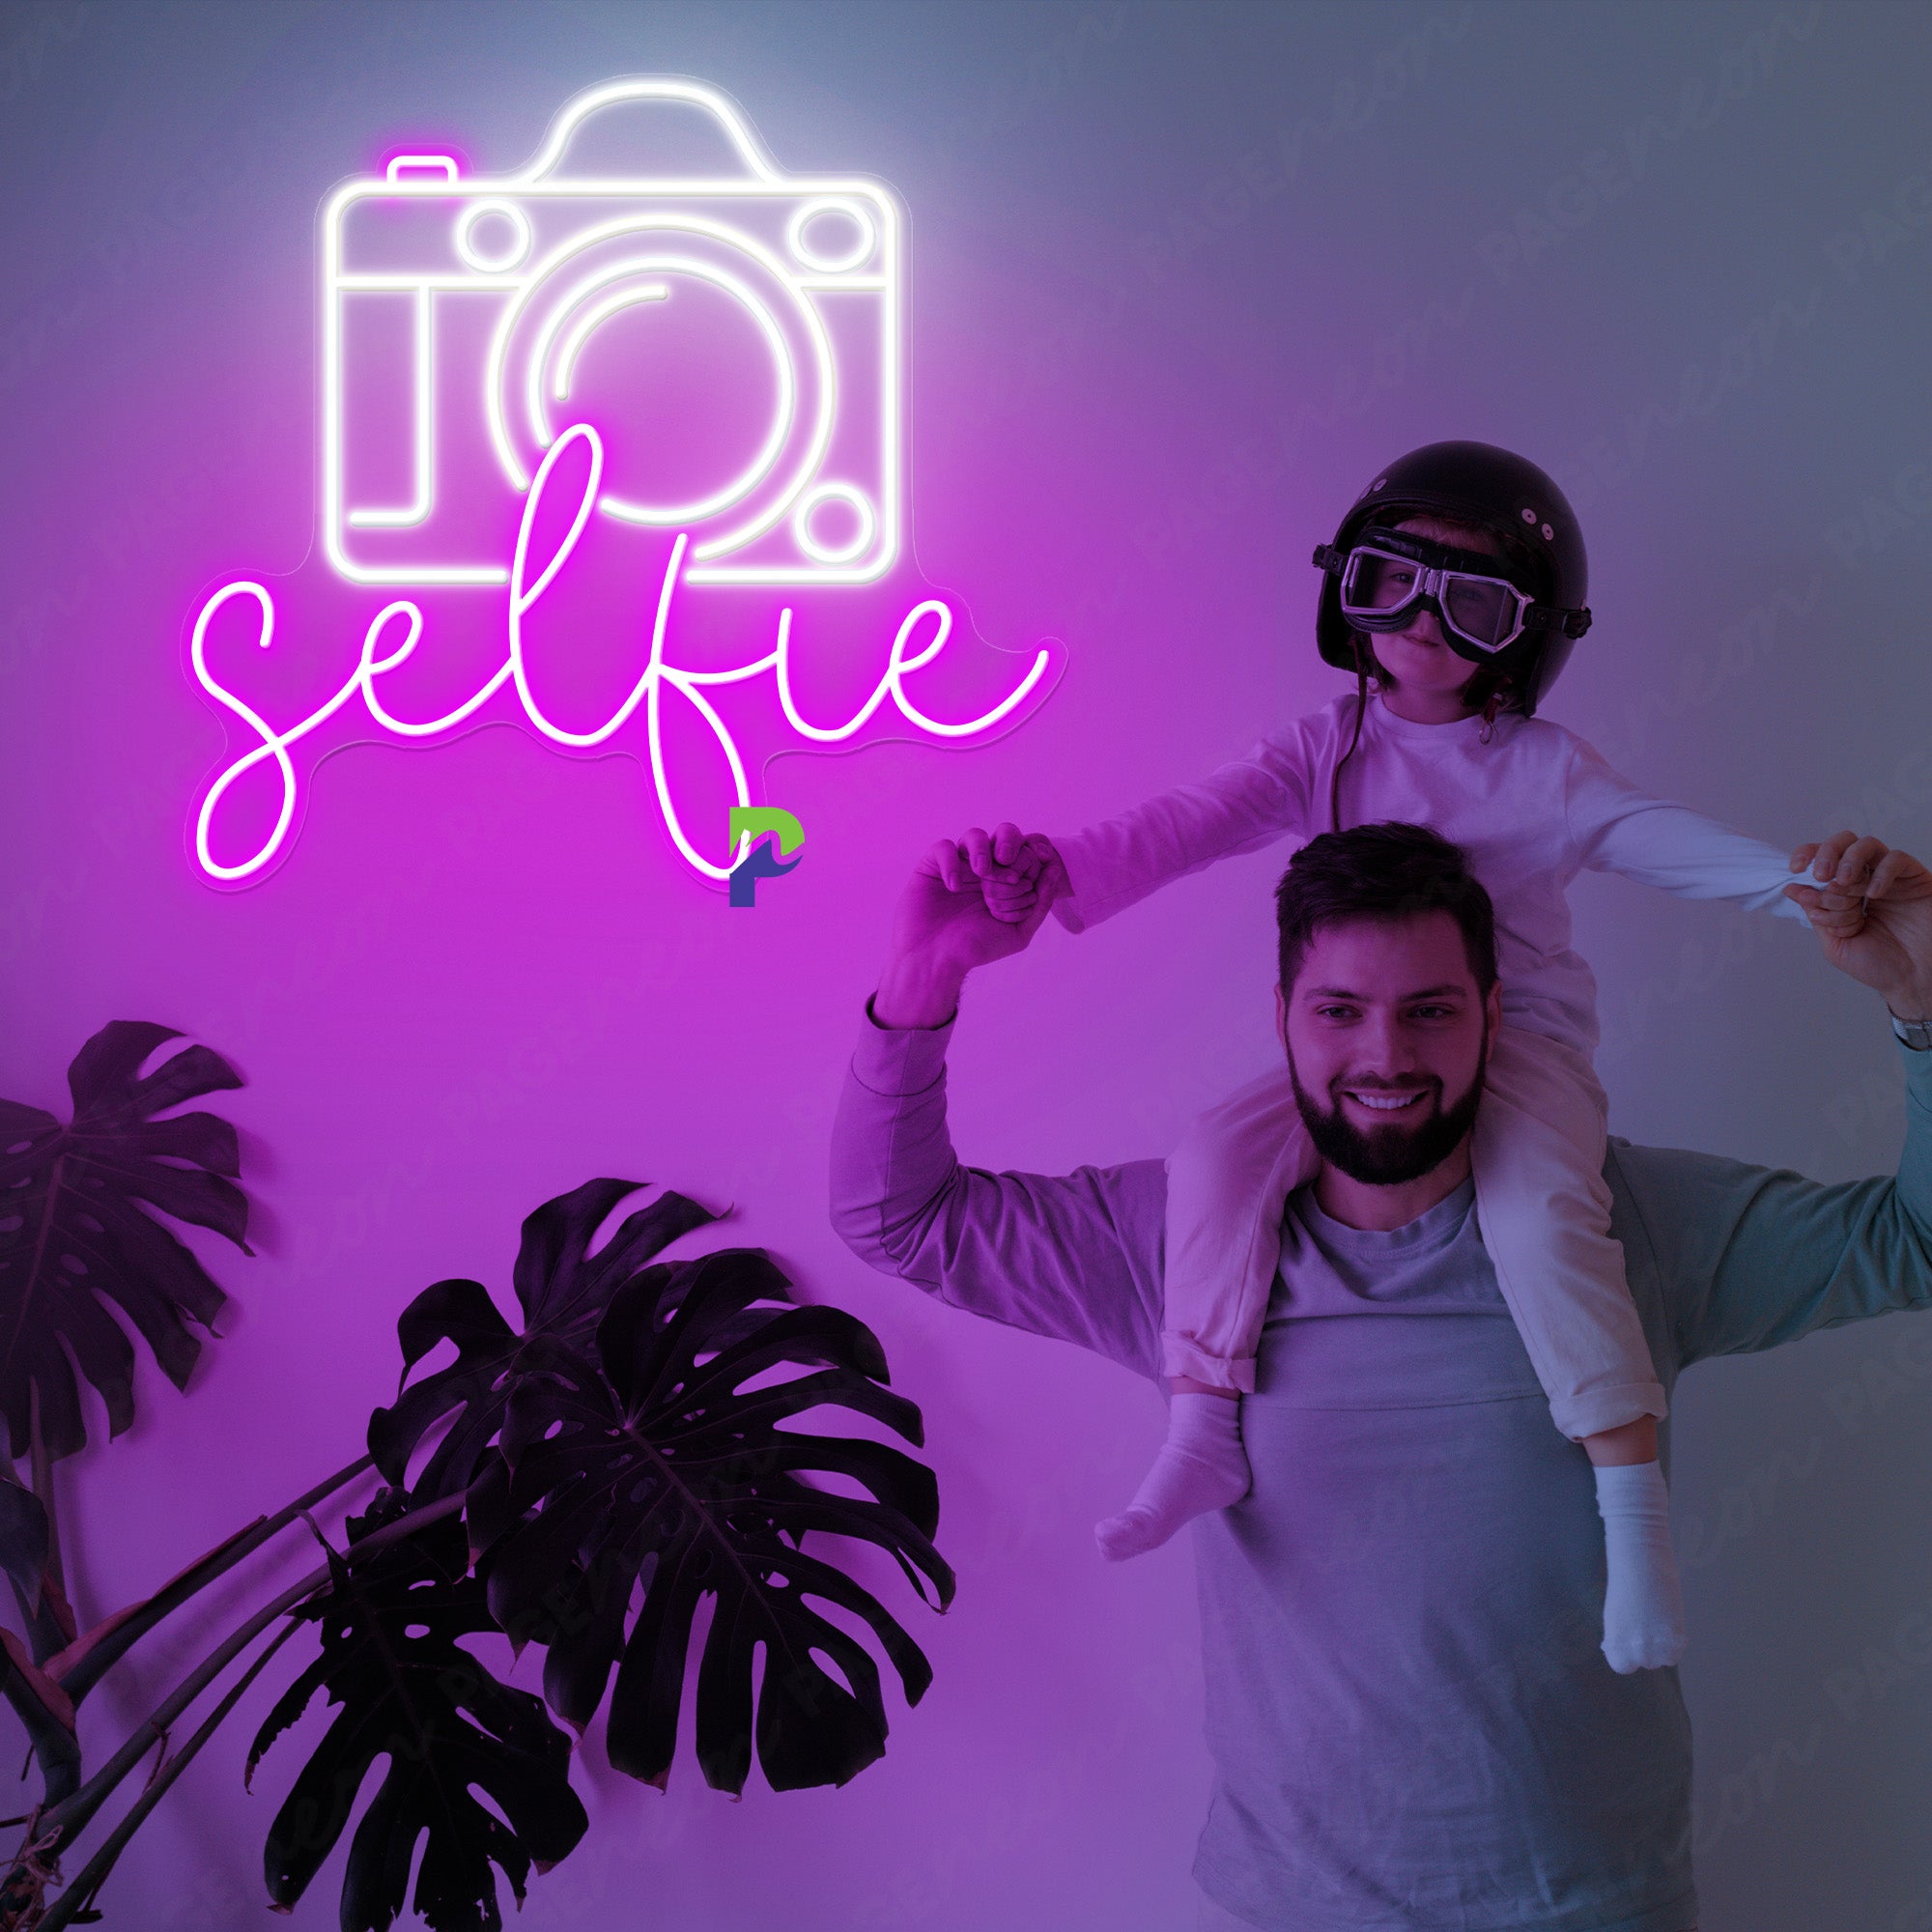 Selfie Neon Sign Party Led Light purple